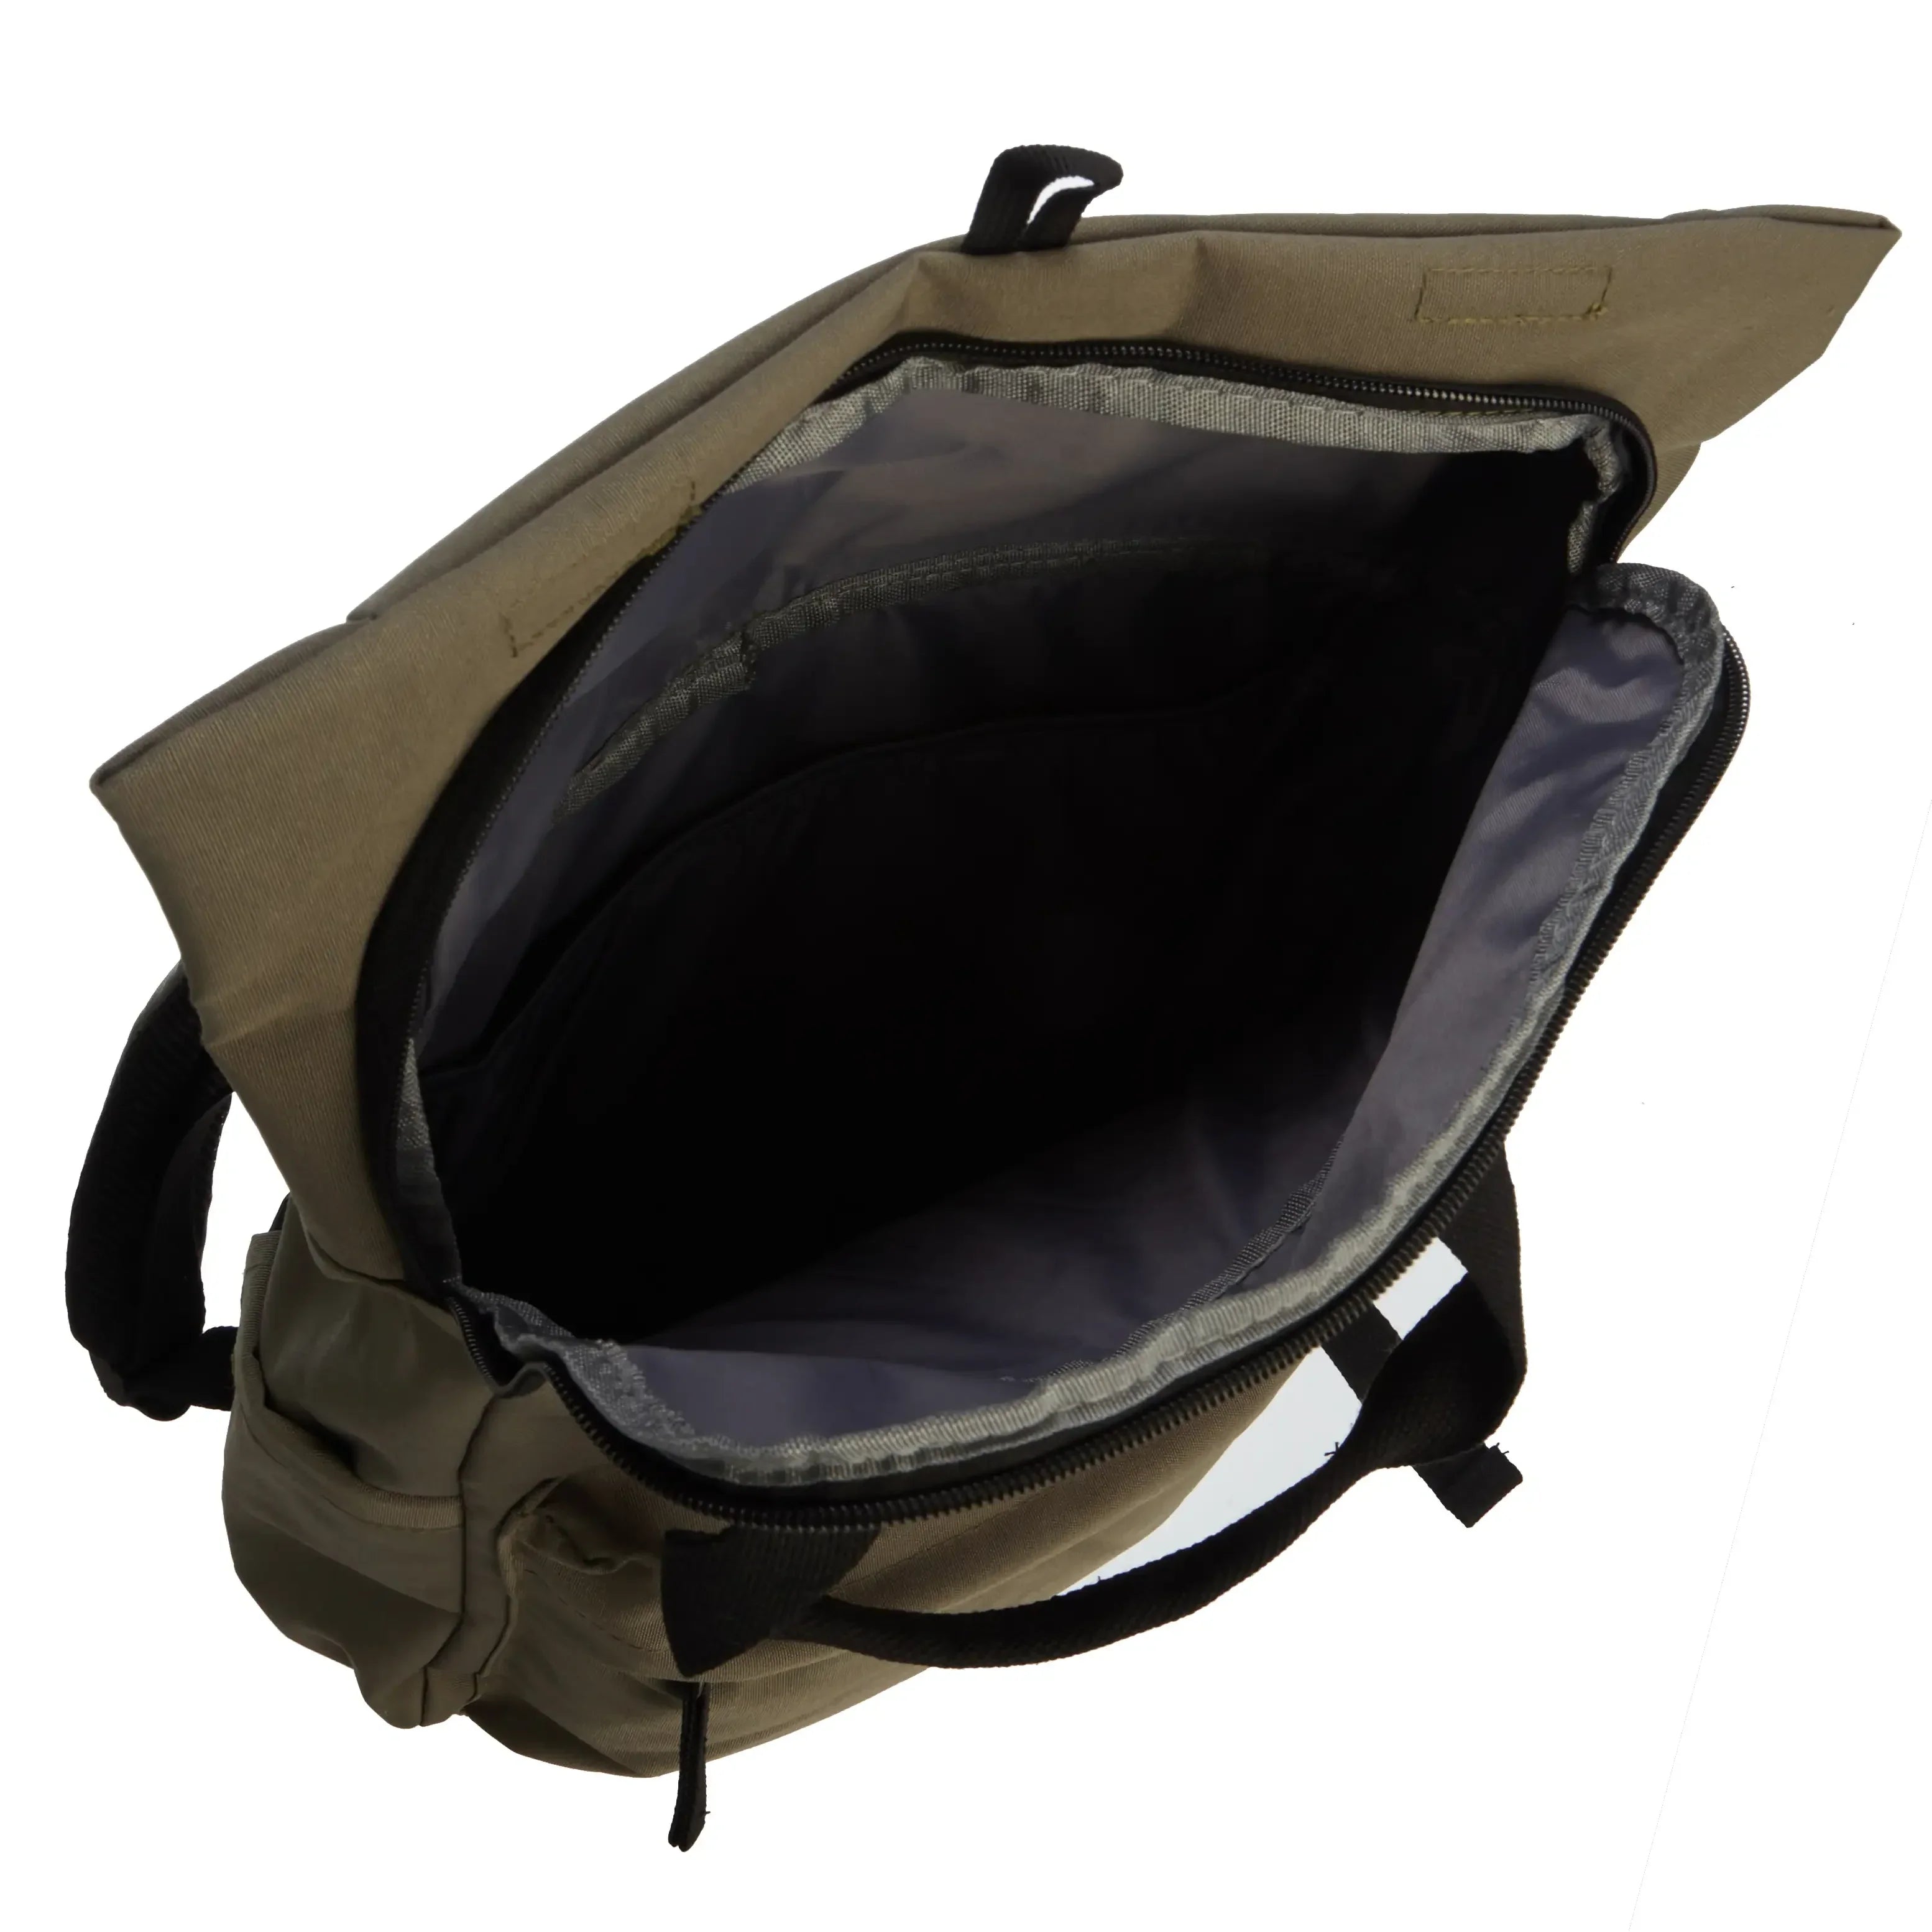 koffer-direkt.de Leisure backpack 42 cm - black